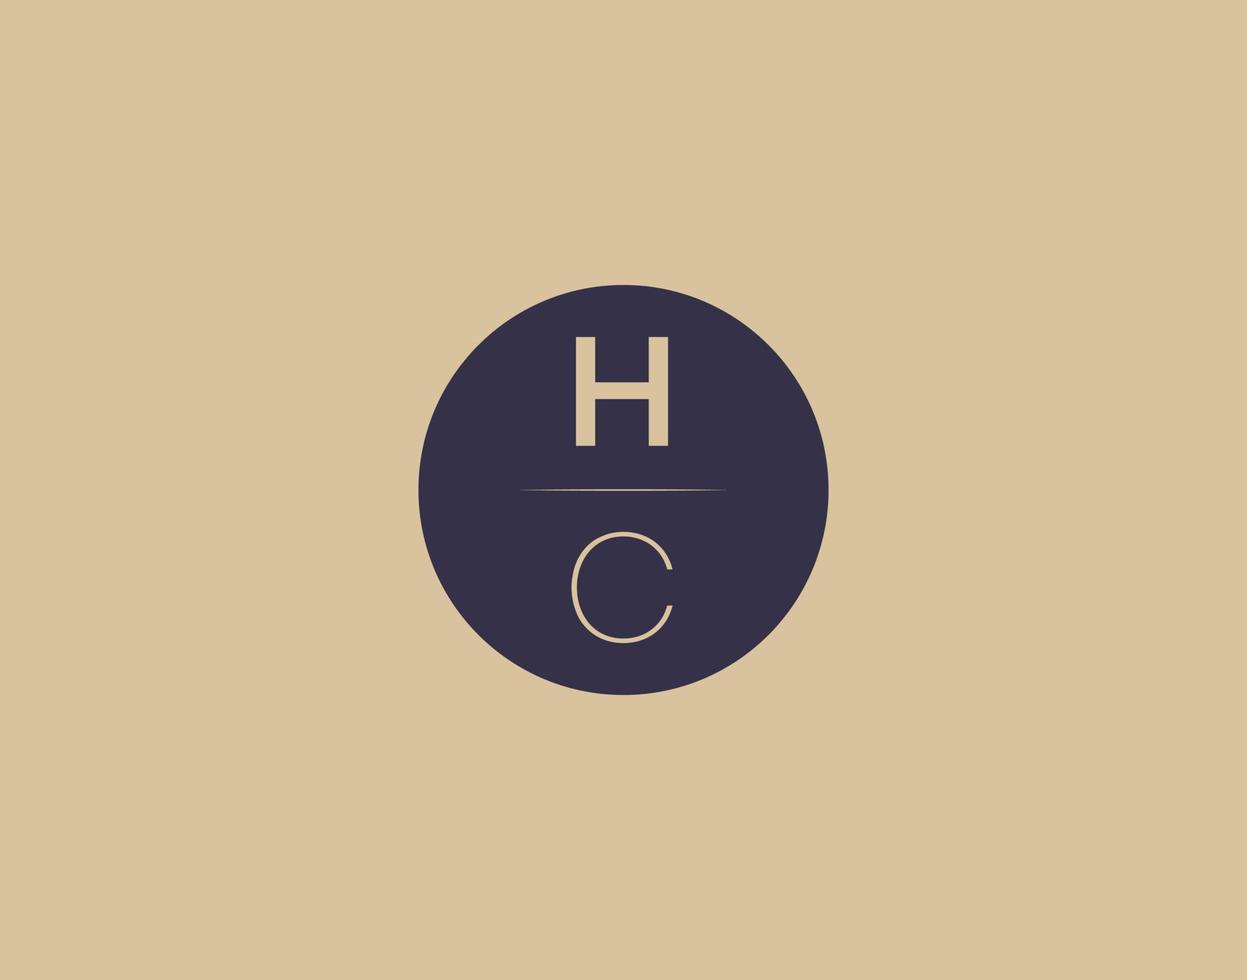 hc brief modern elegant logo ontwerp vector afbeeldingen